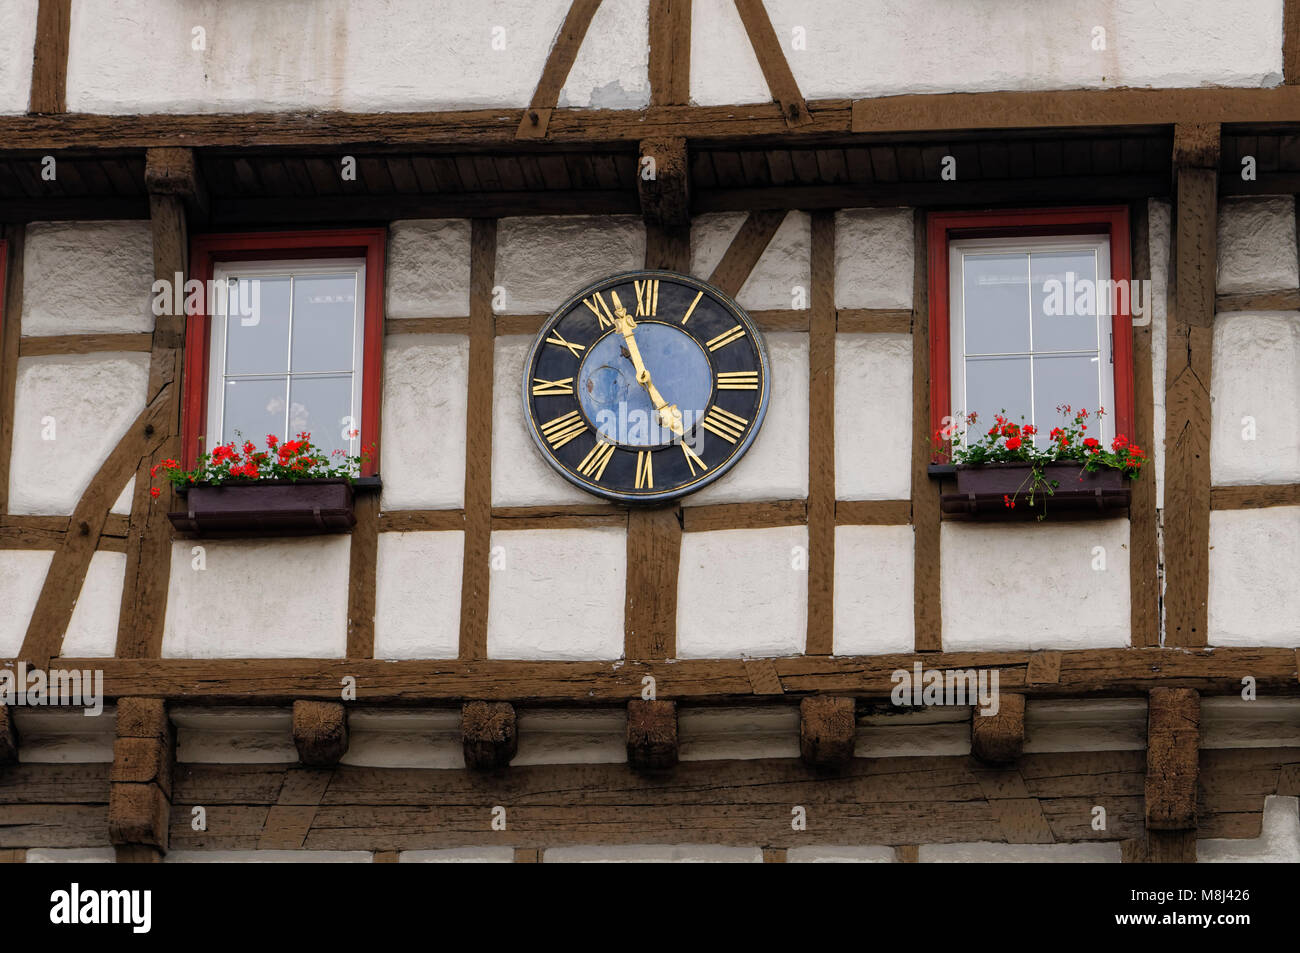 Blaubeuren: Horloge à la maison à demi-bois dans la vieille ville, Alb-Donau District, Bade-Wurtemberg, Allemagne Banque D'Images